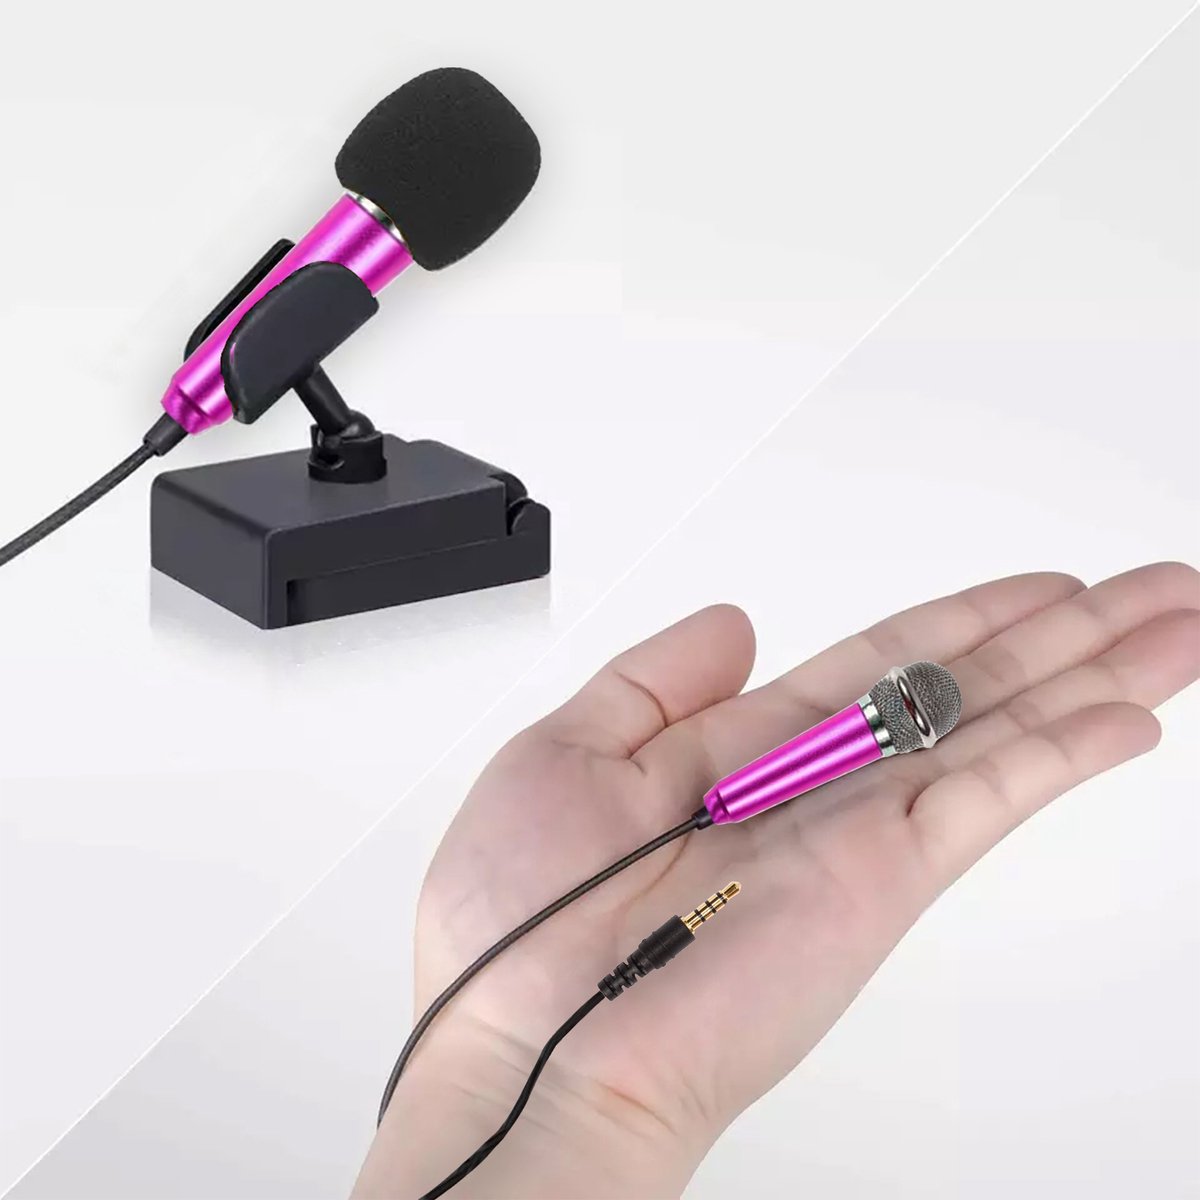 Mini Microfoon voor Telefoon - Roze - 3.5mm - Schattig voor TikTok of Karaoke - MiniTune